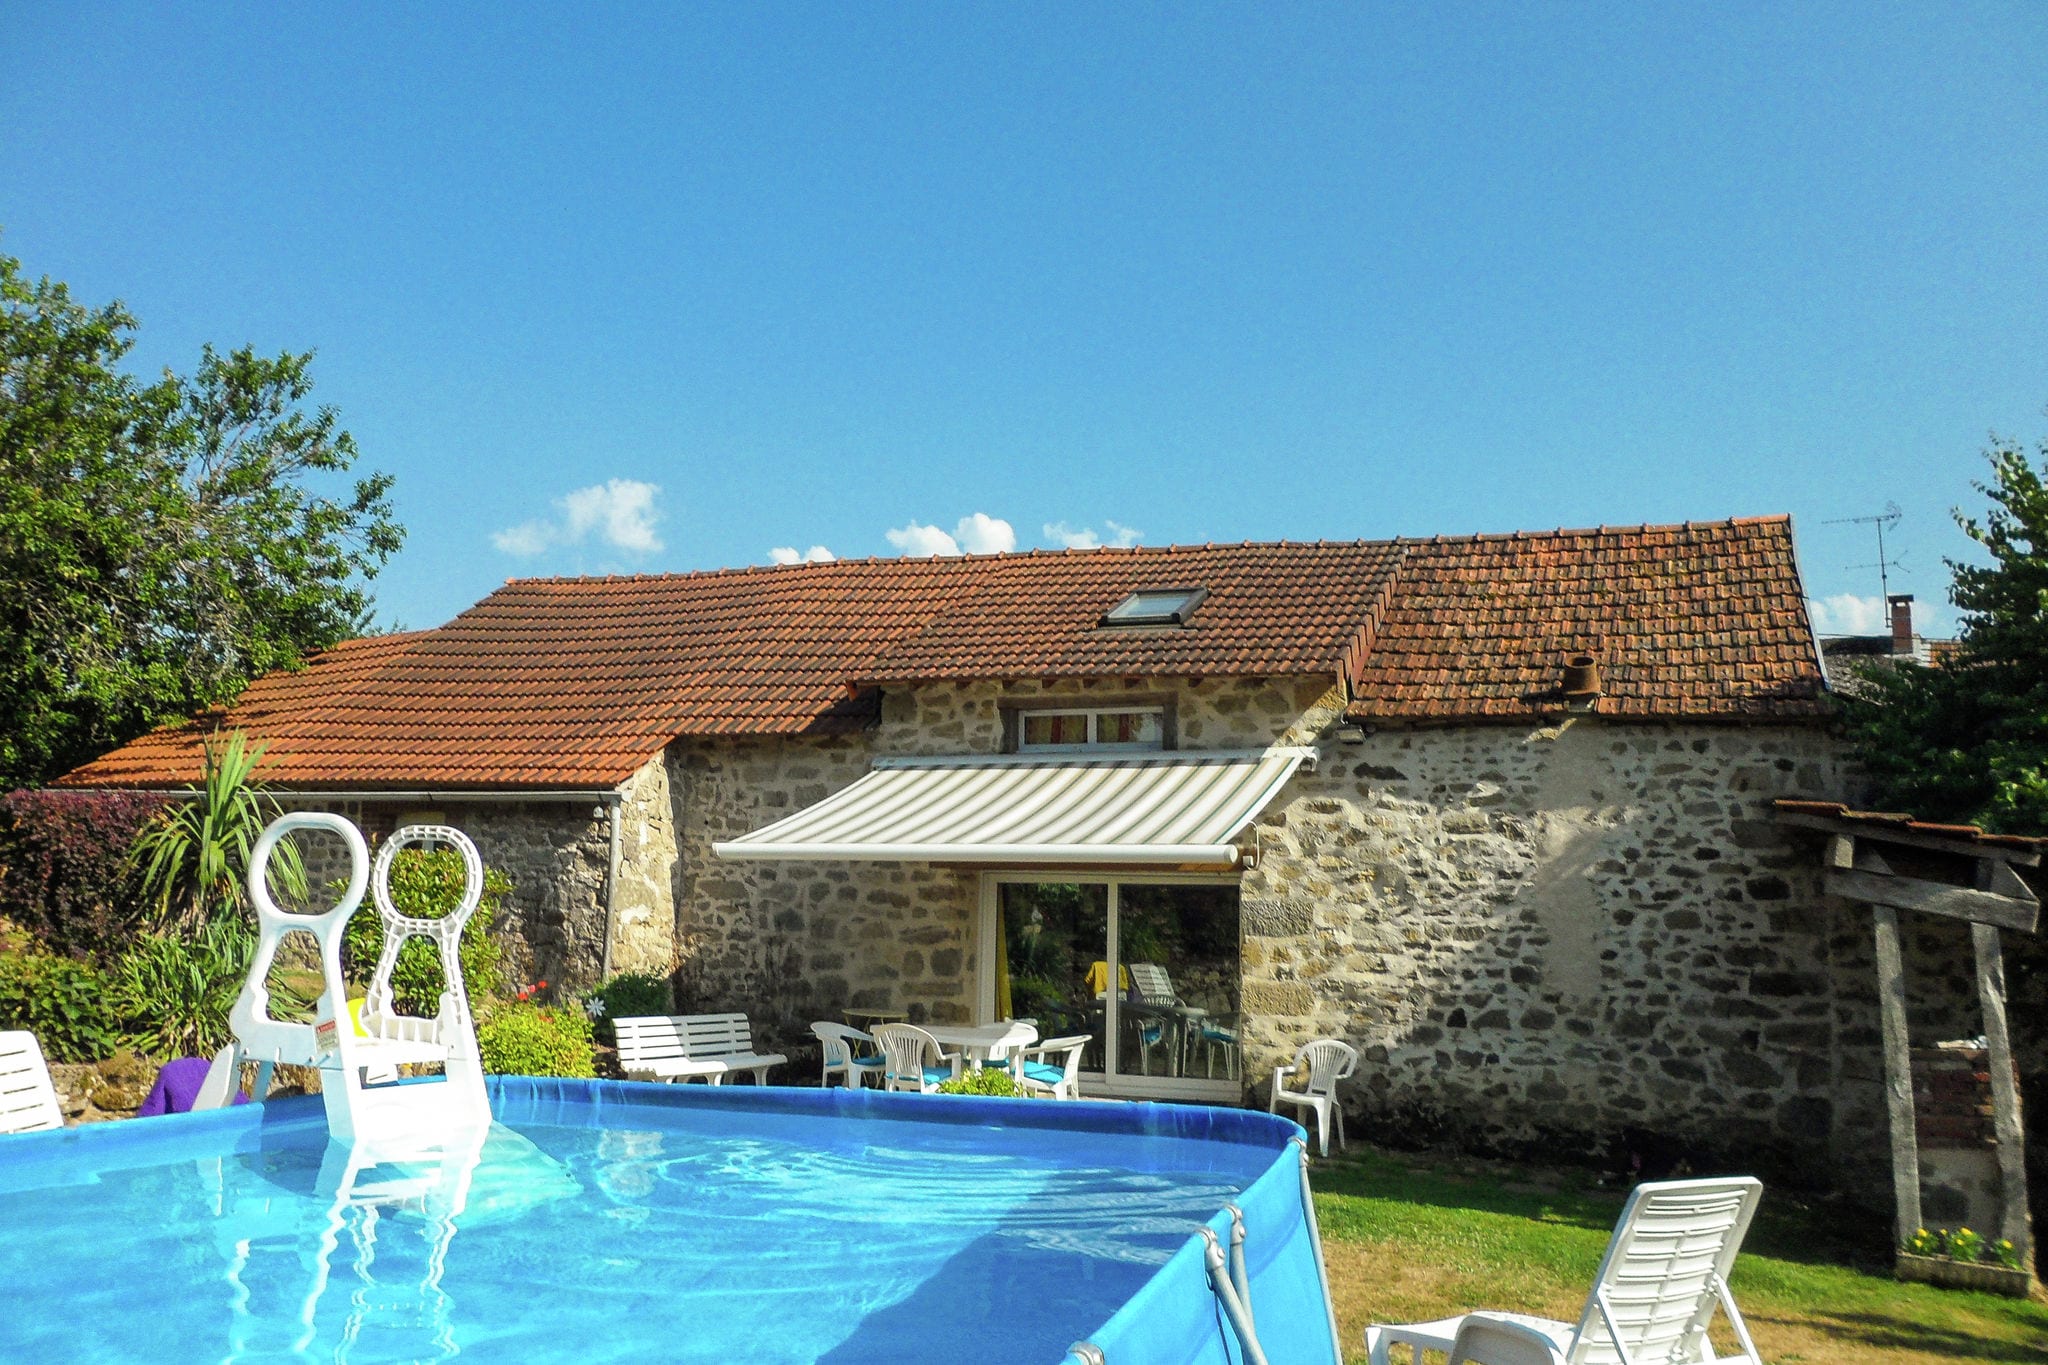 Gemütliches Ferienhaus in Marsac, Frankreich mit Pool